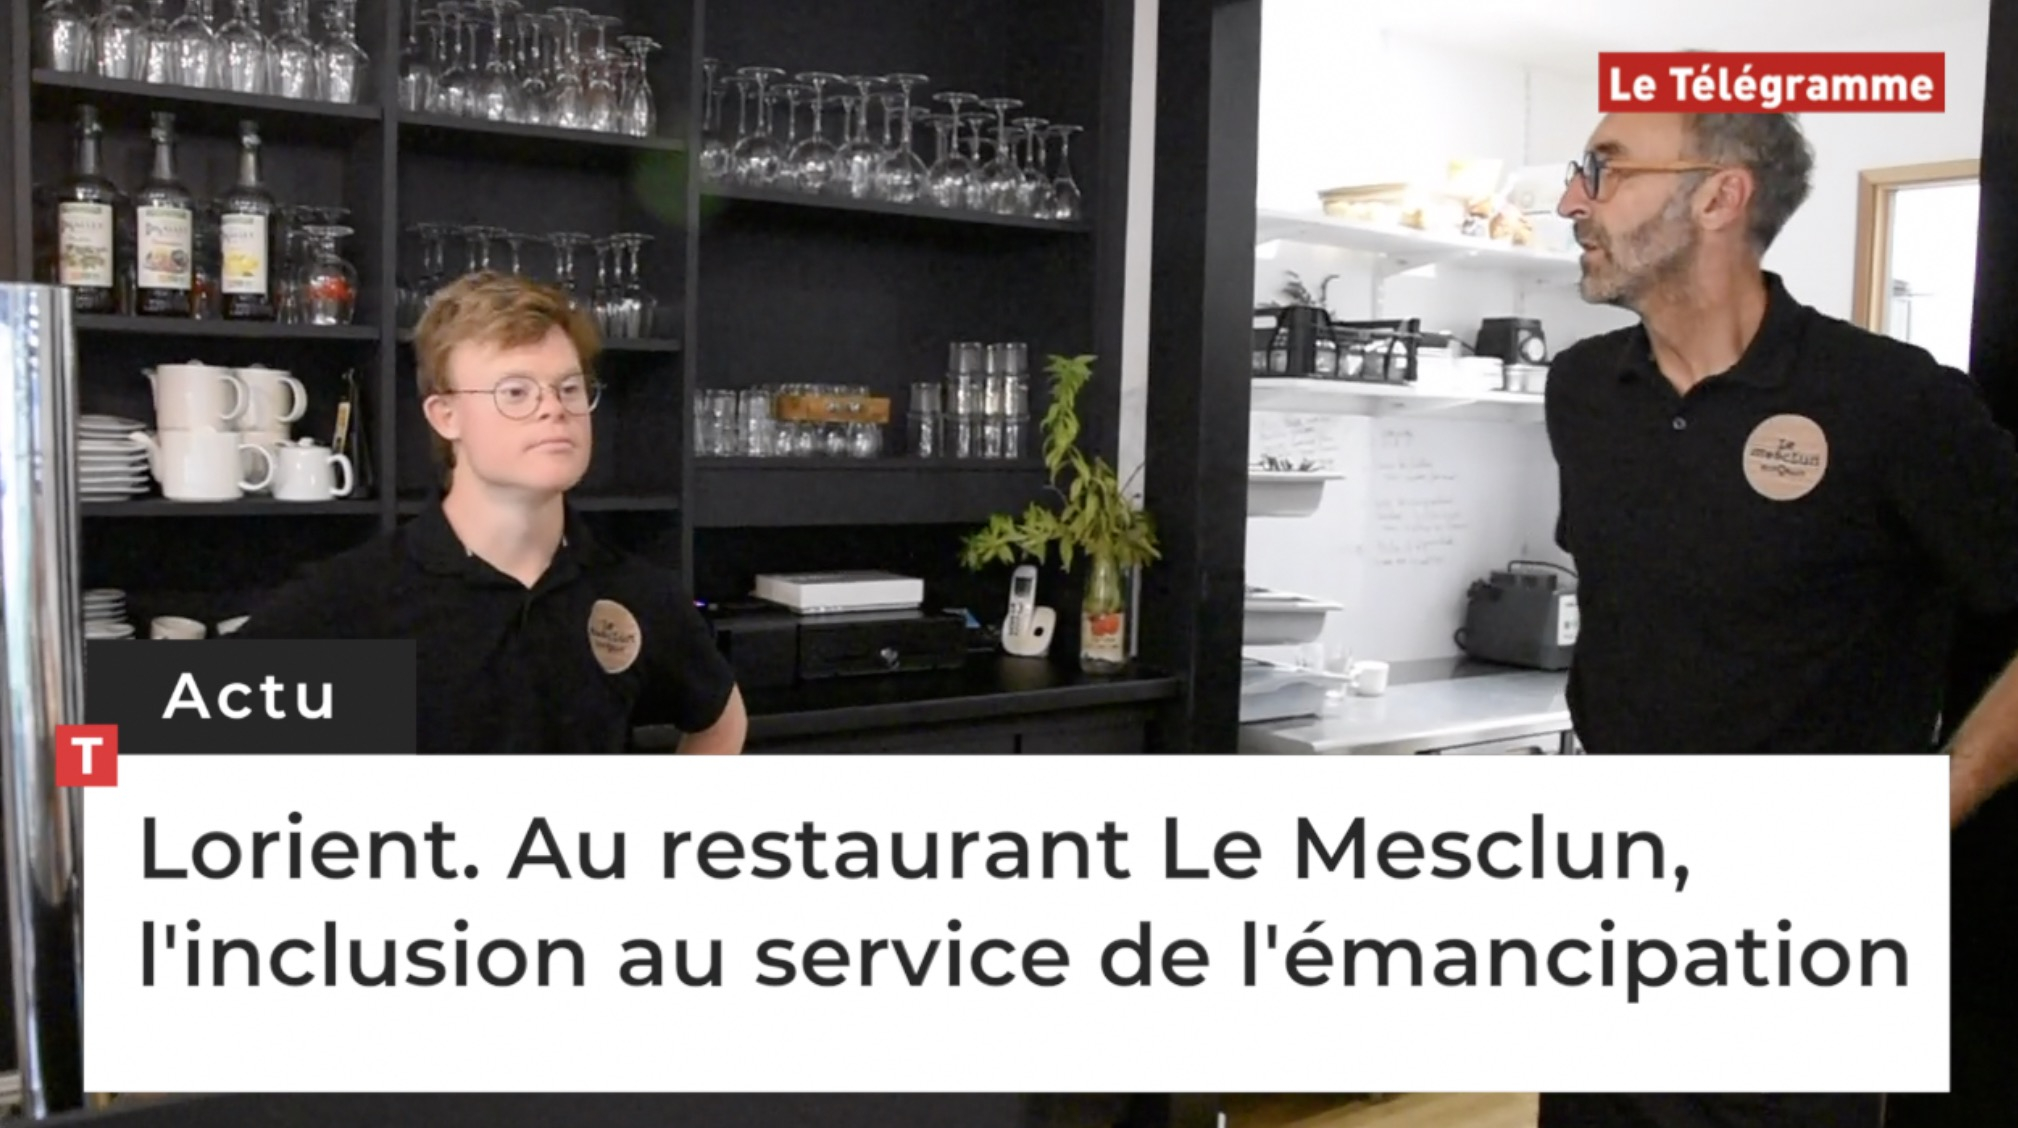 Lorient. Au restaurant Le Mesclun, l'inclusion au service de l'émancipation (Le Télégramme)